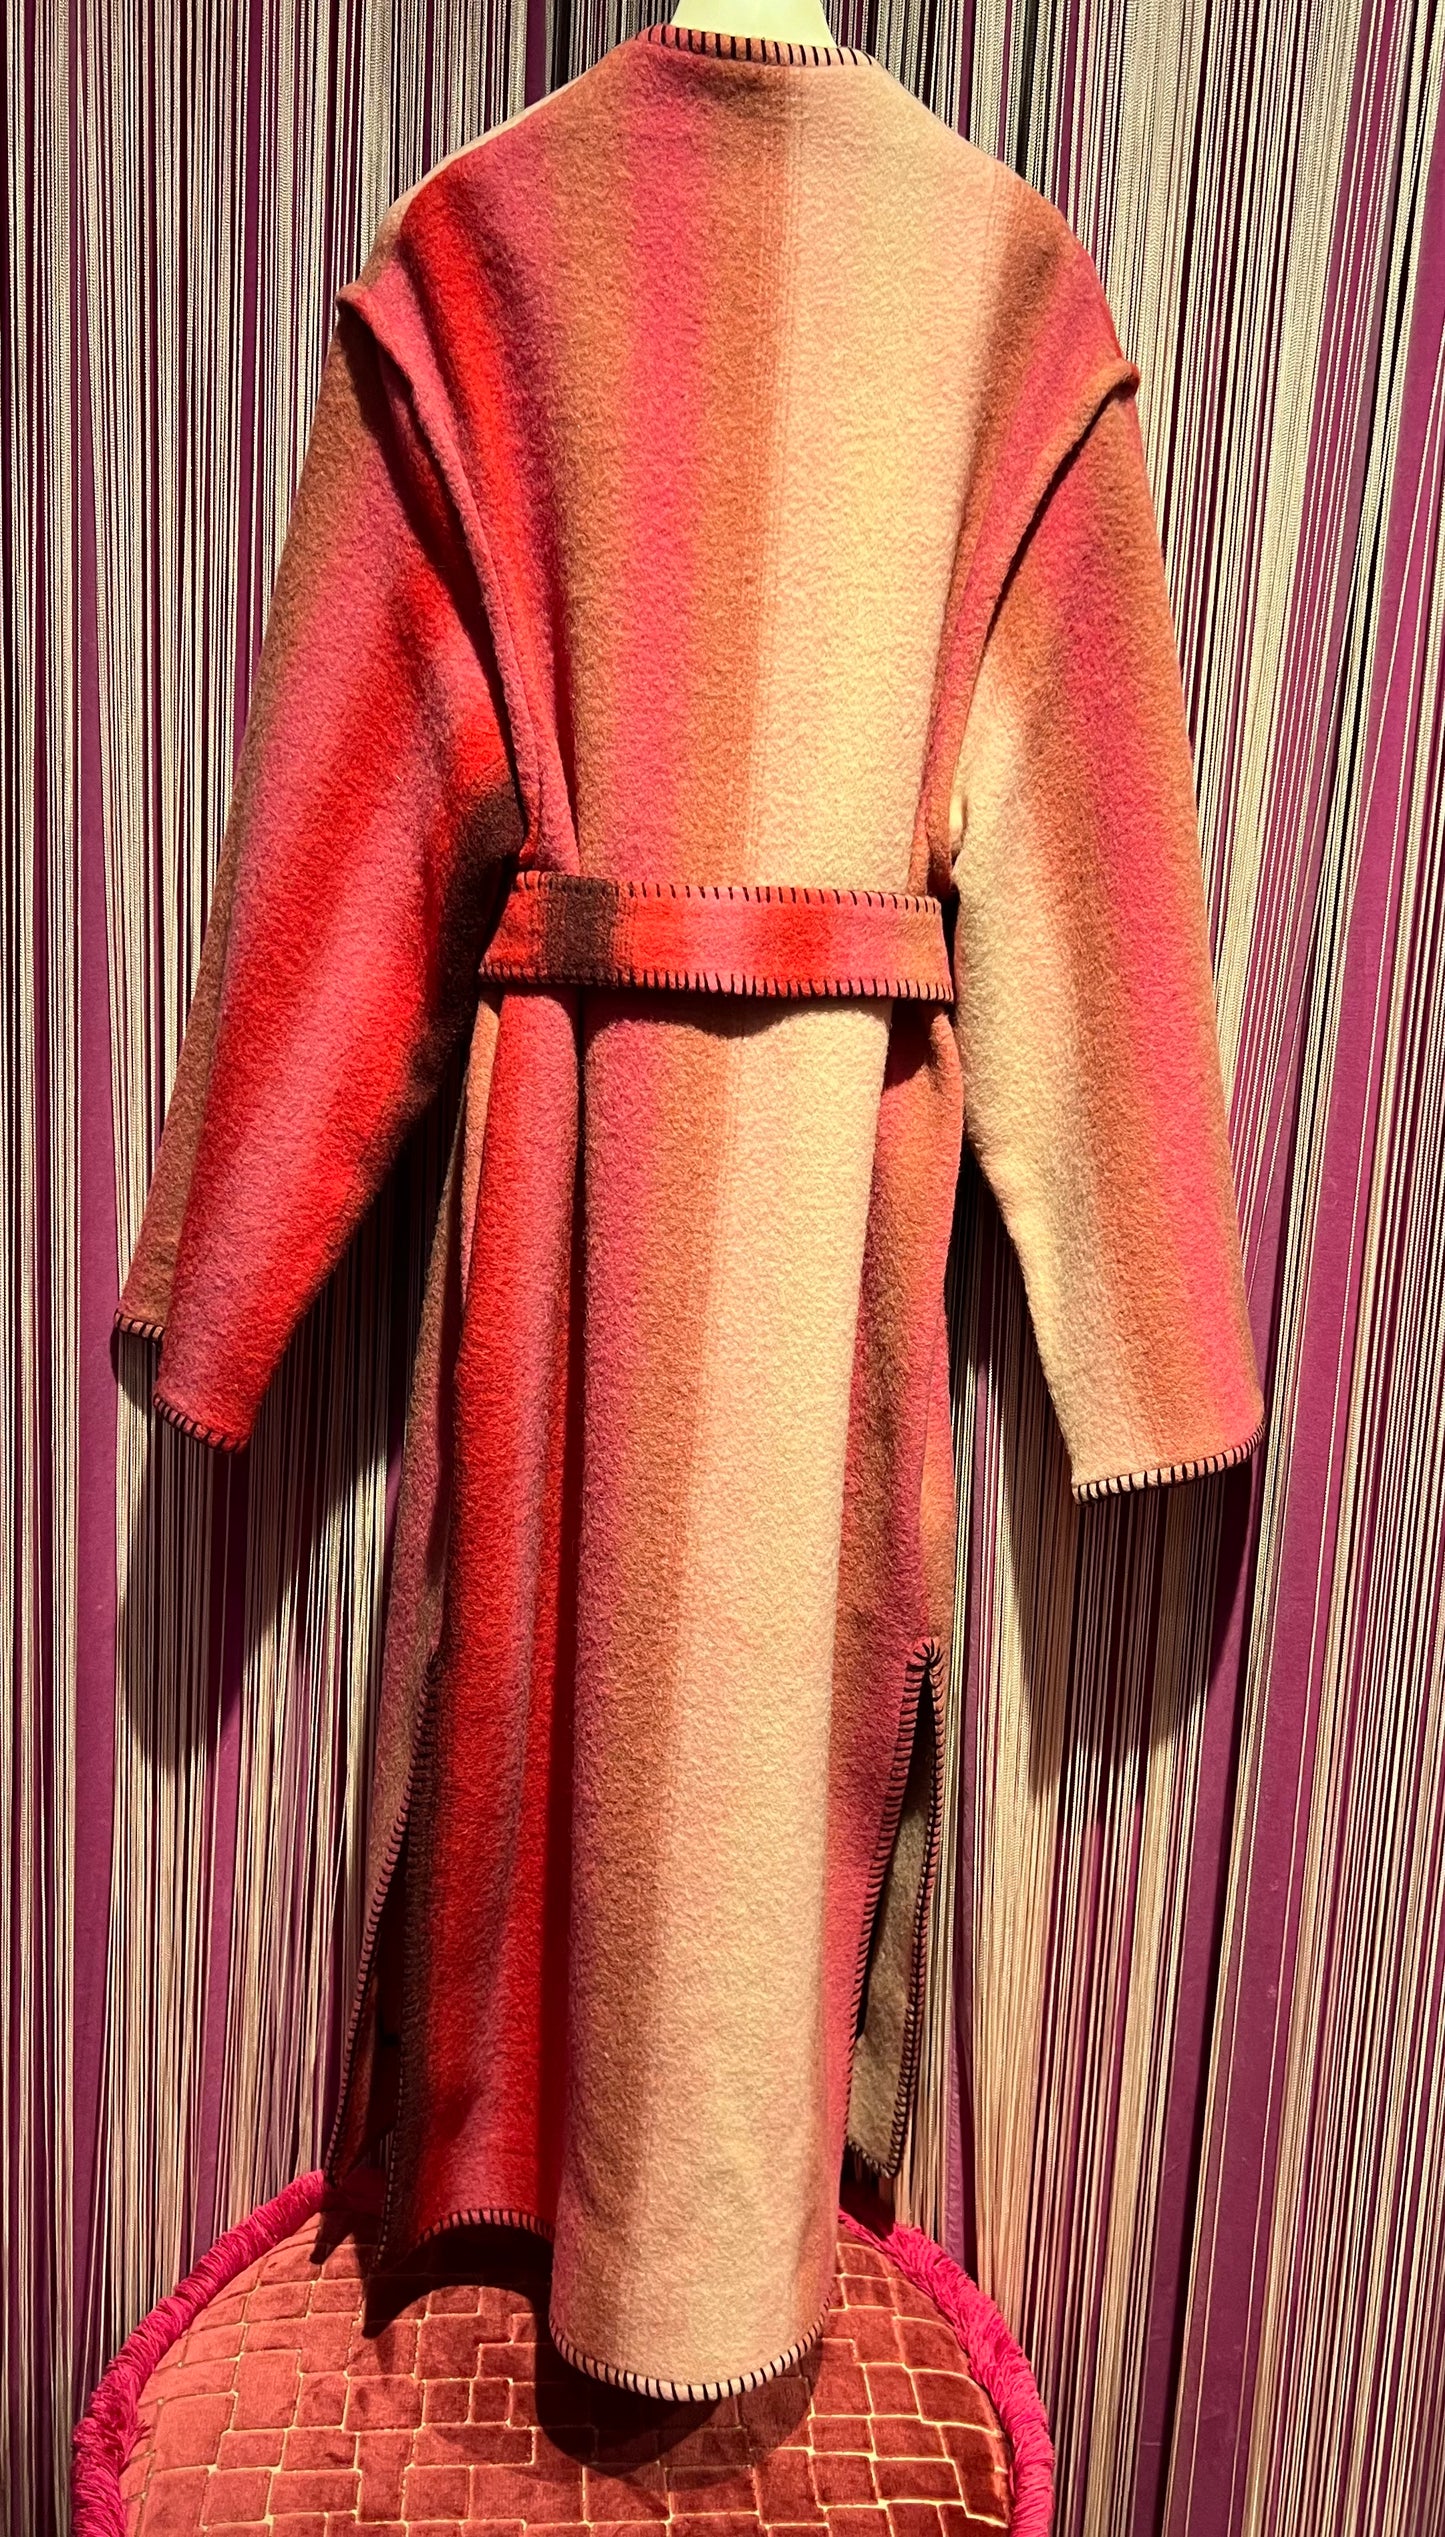 Hanami D’or cappotto con spacchi e punto coperta Otelma sconto 50%